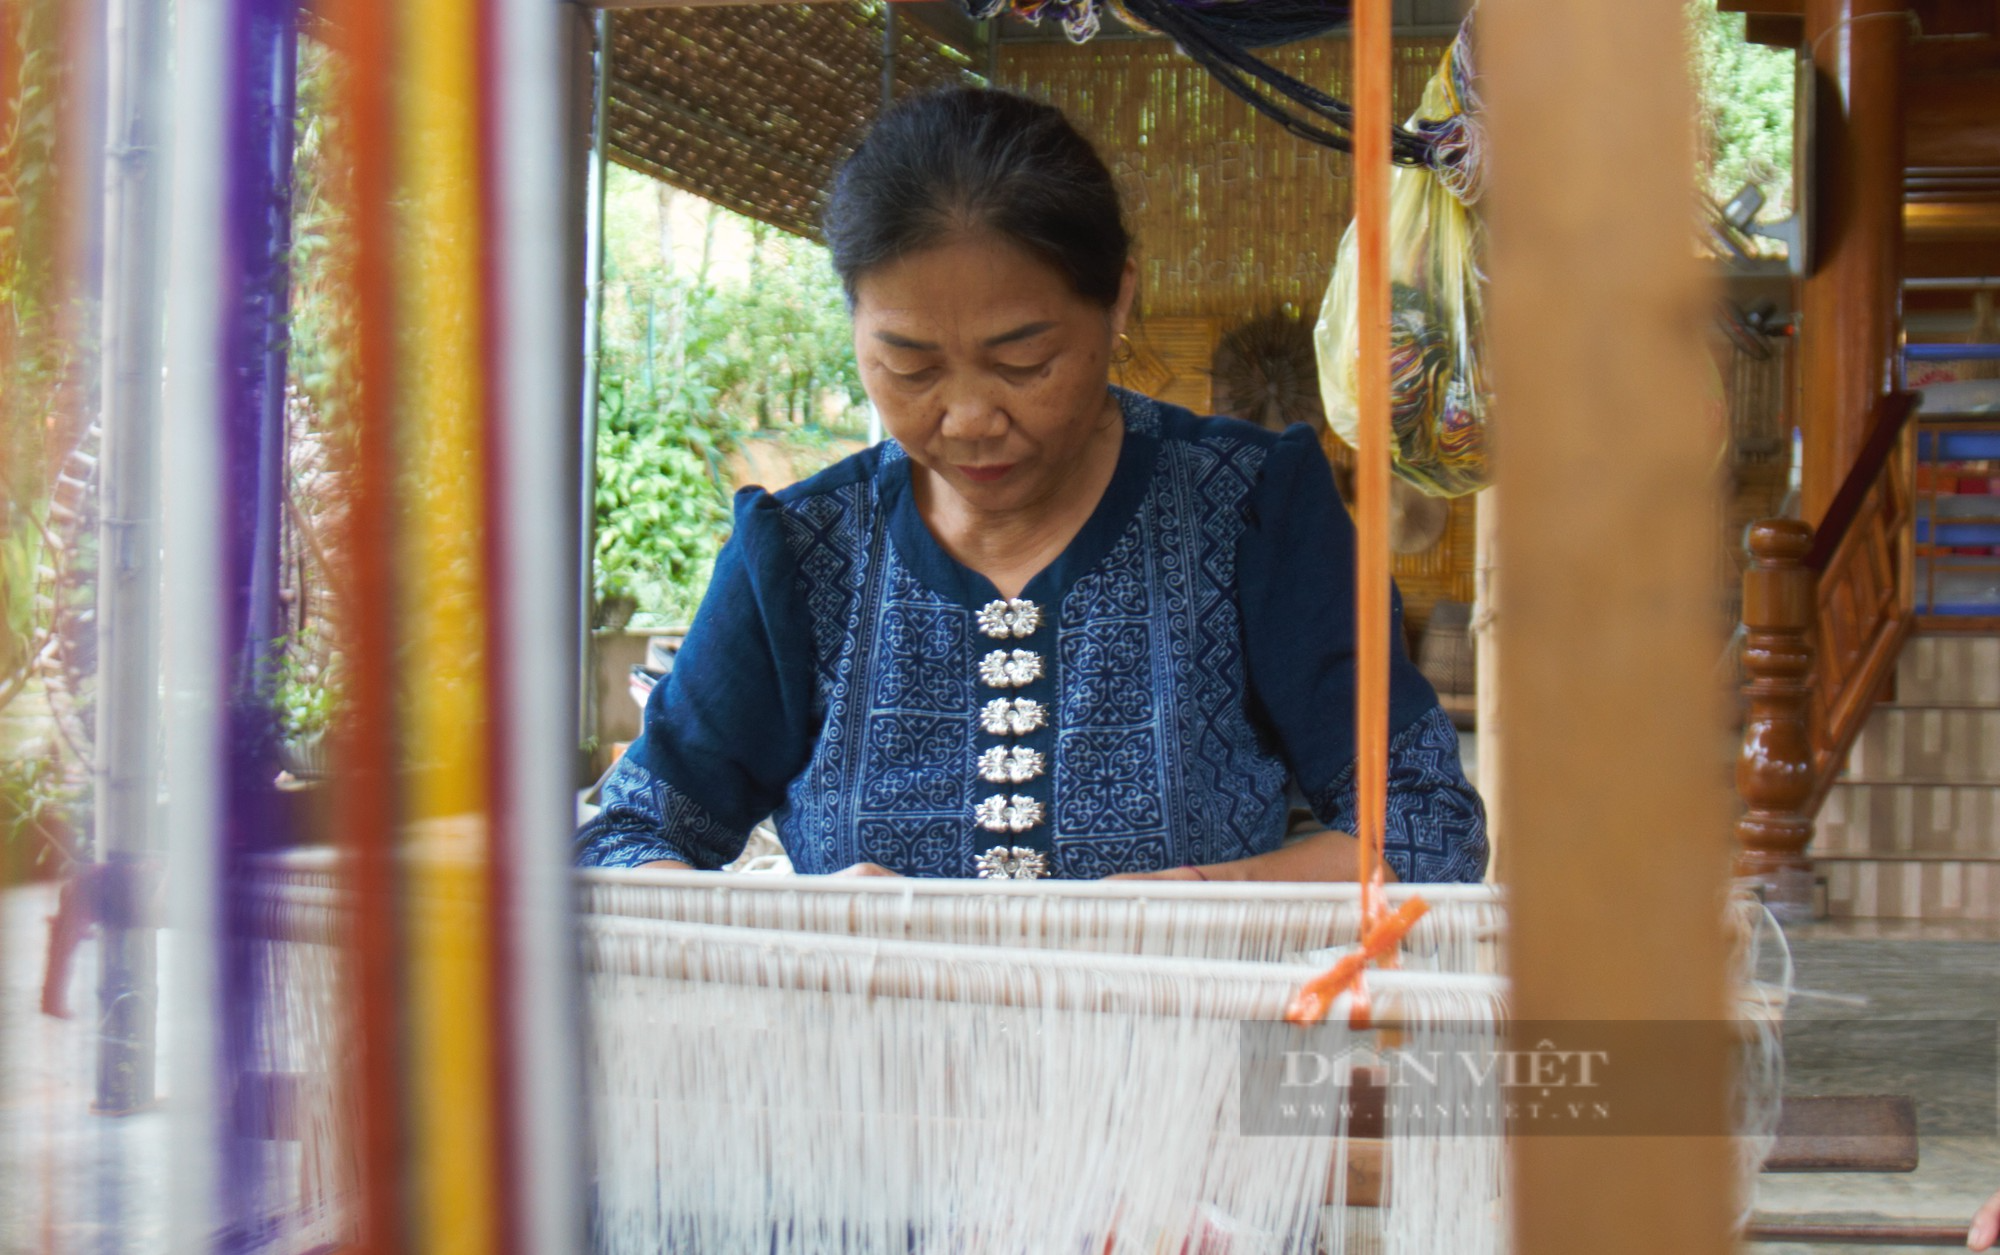 Bản người Thái làm Homestay, khôi phục nghề dệt truyền thống hút khách về thăm, thu tiền tỷ - Ảnh 6.